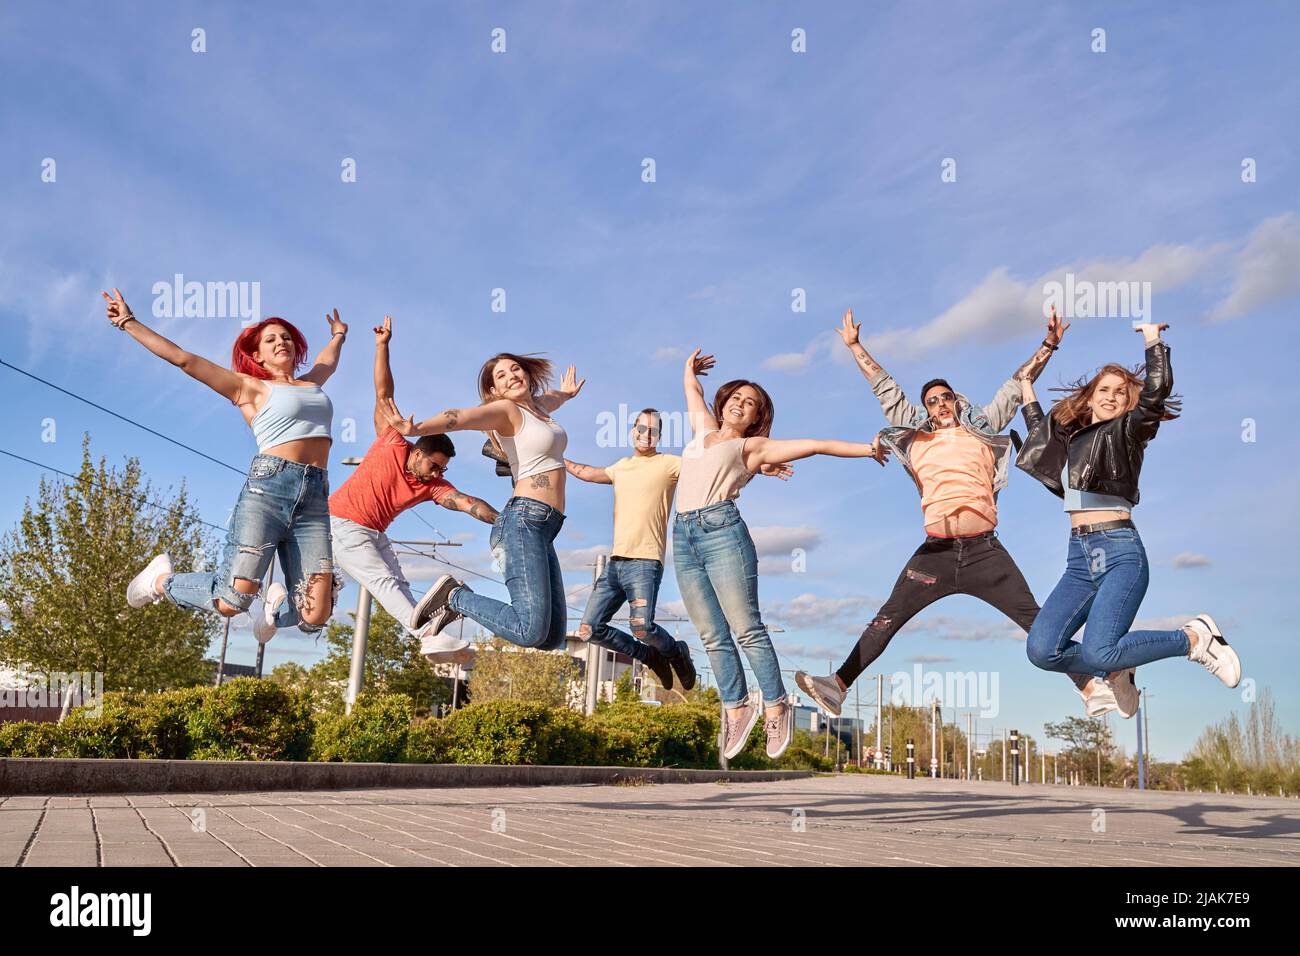 Gruppo di amici felici che sorridono alla fotocamera mentre saltano insieme all'aperto. Concetto di amicizia e felicità. Foto Stock